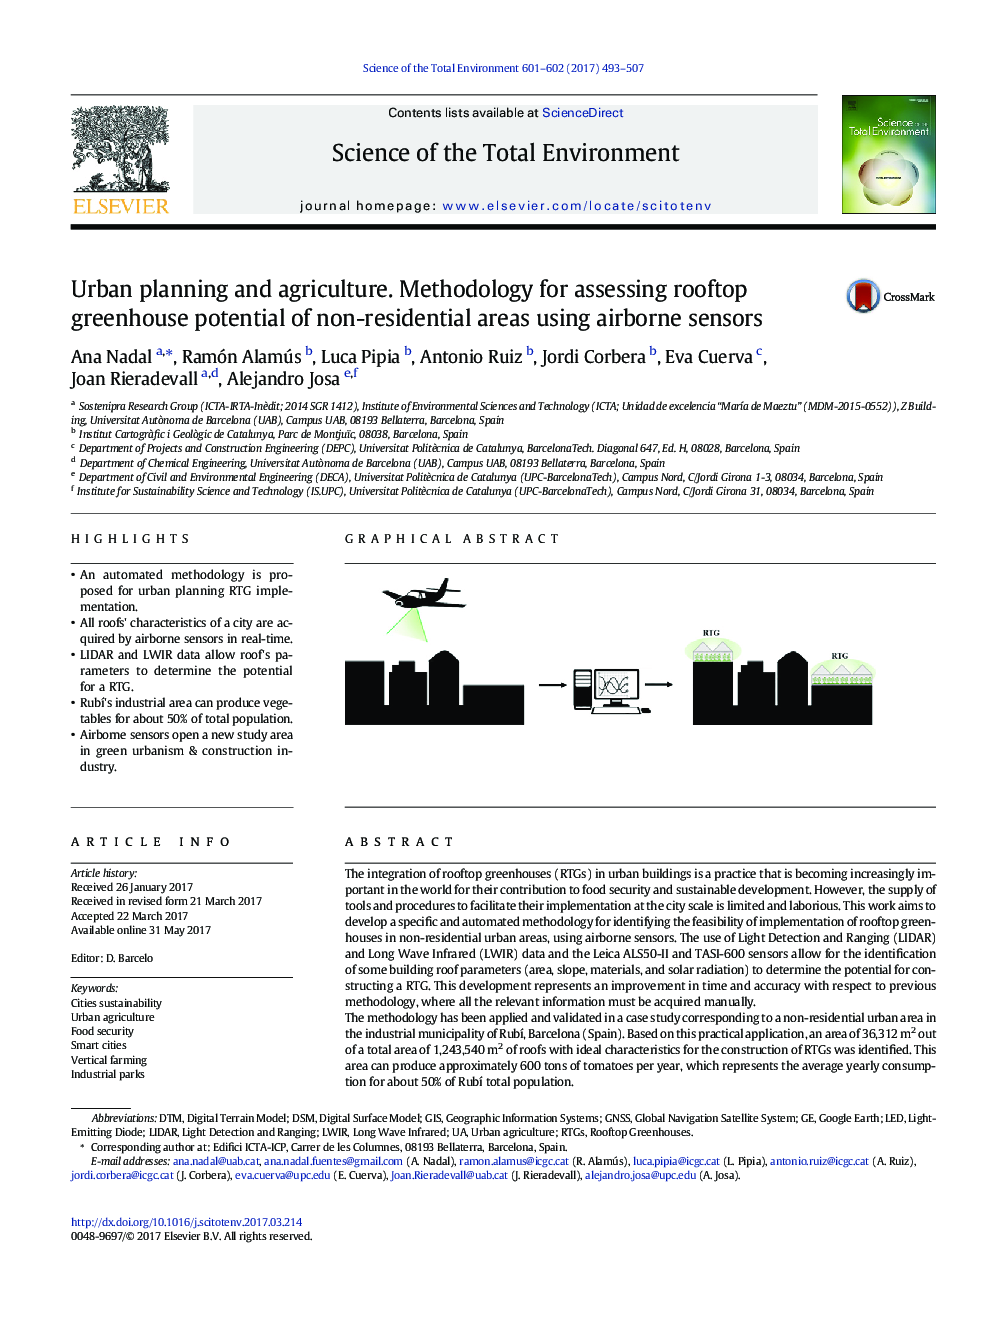 برنامه ریزی شهری و کشاورزی. روش شناسی برای ارزیابی پتانسیل پشتیبان گلخانه ای مناطق غیر مسکونی با استفاده از سنسورهای هوایی 